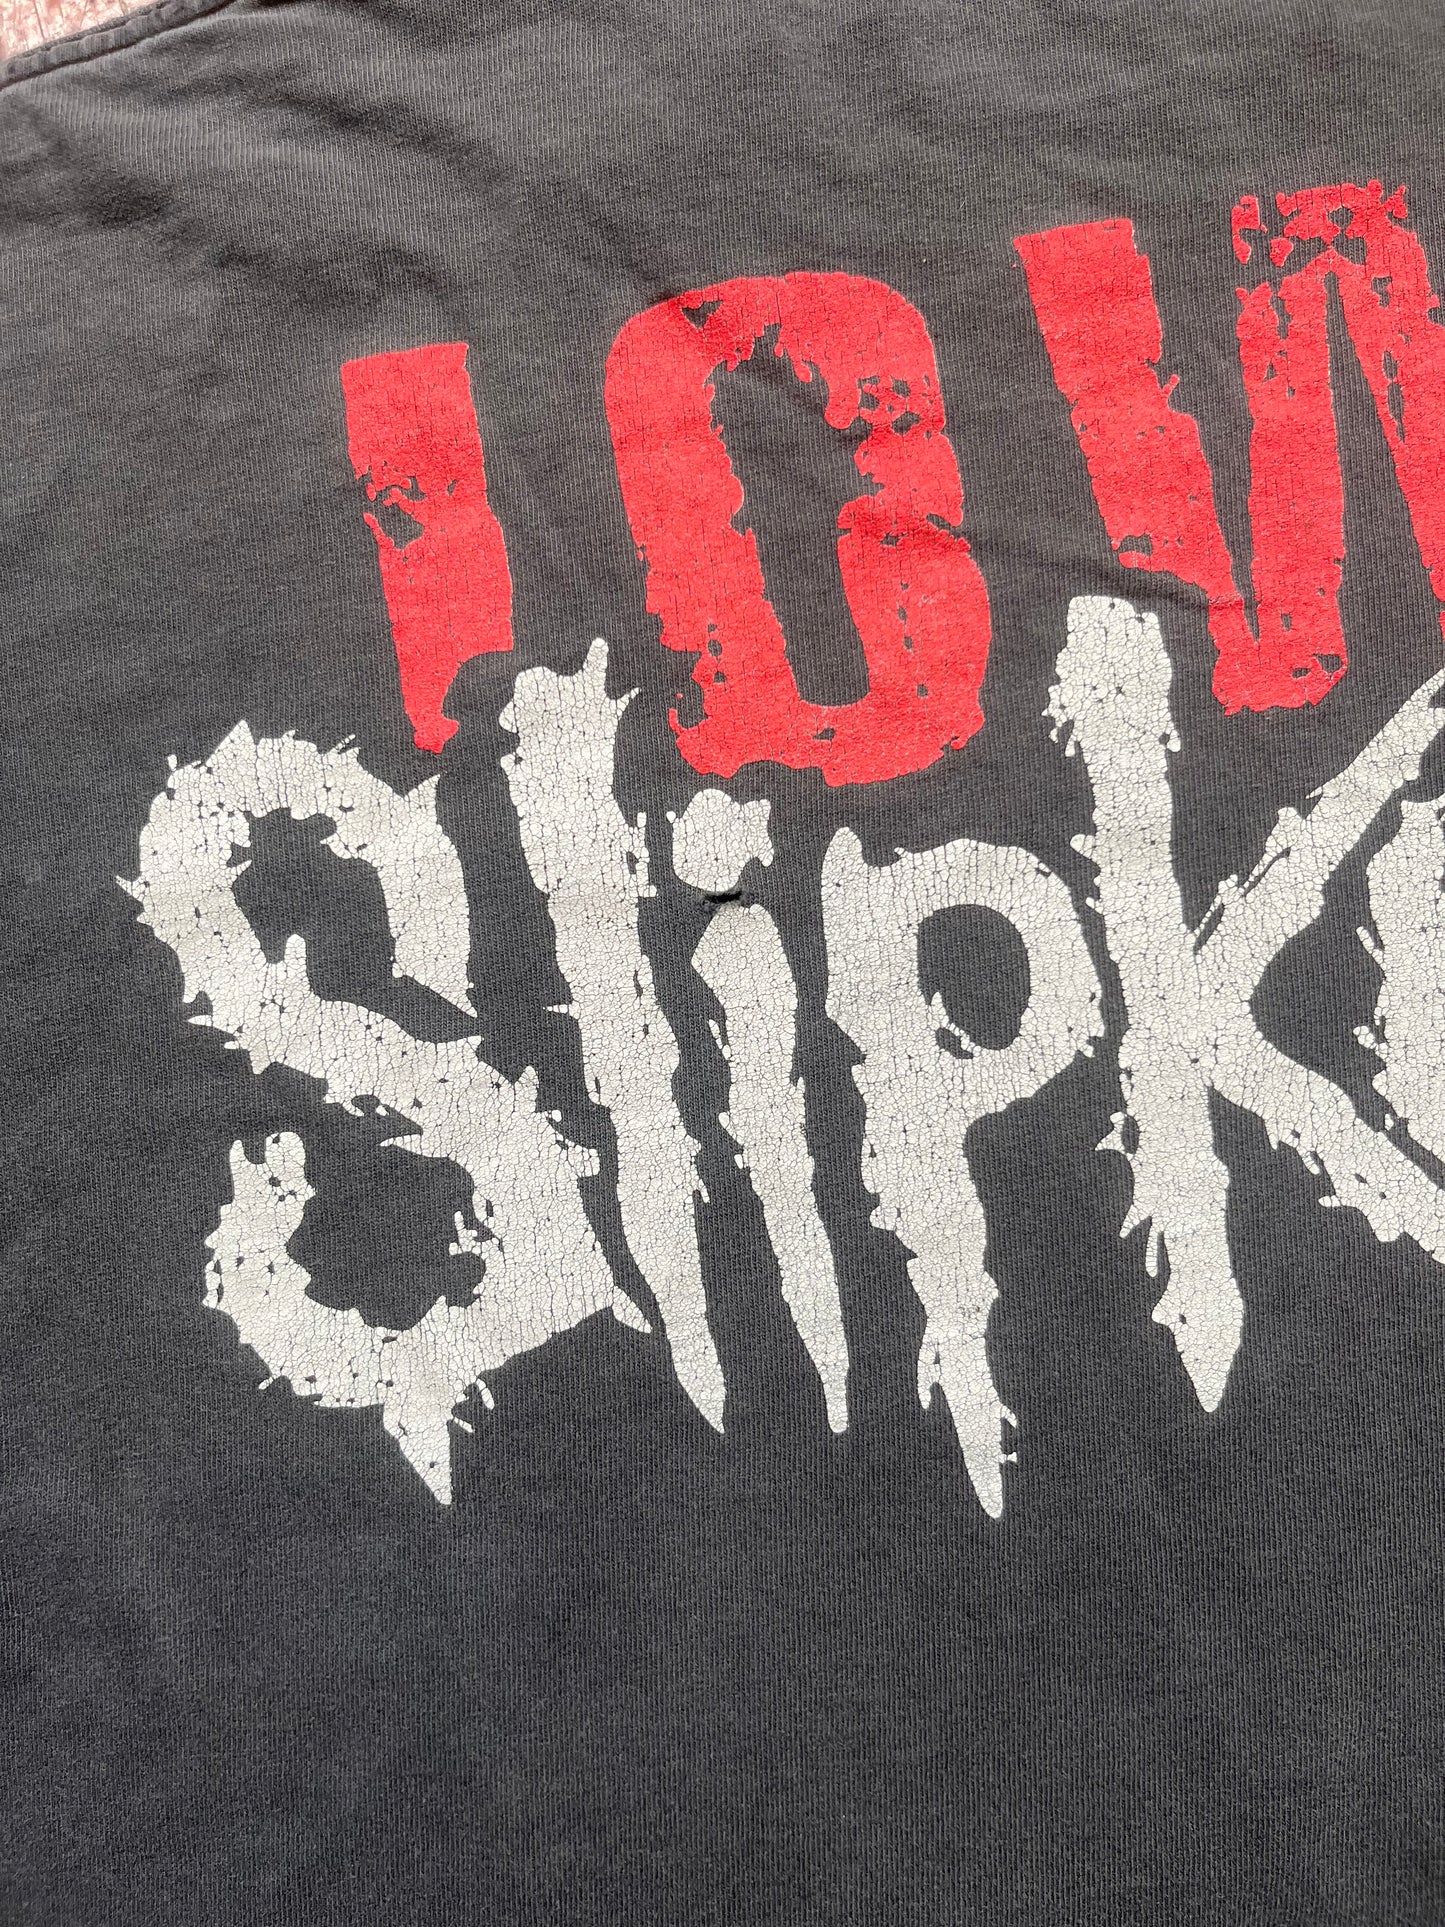 90s Slipknot “Iowa” Tee